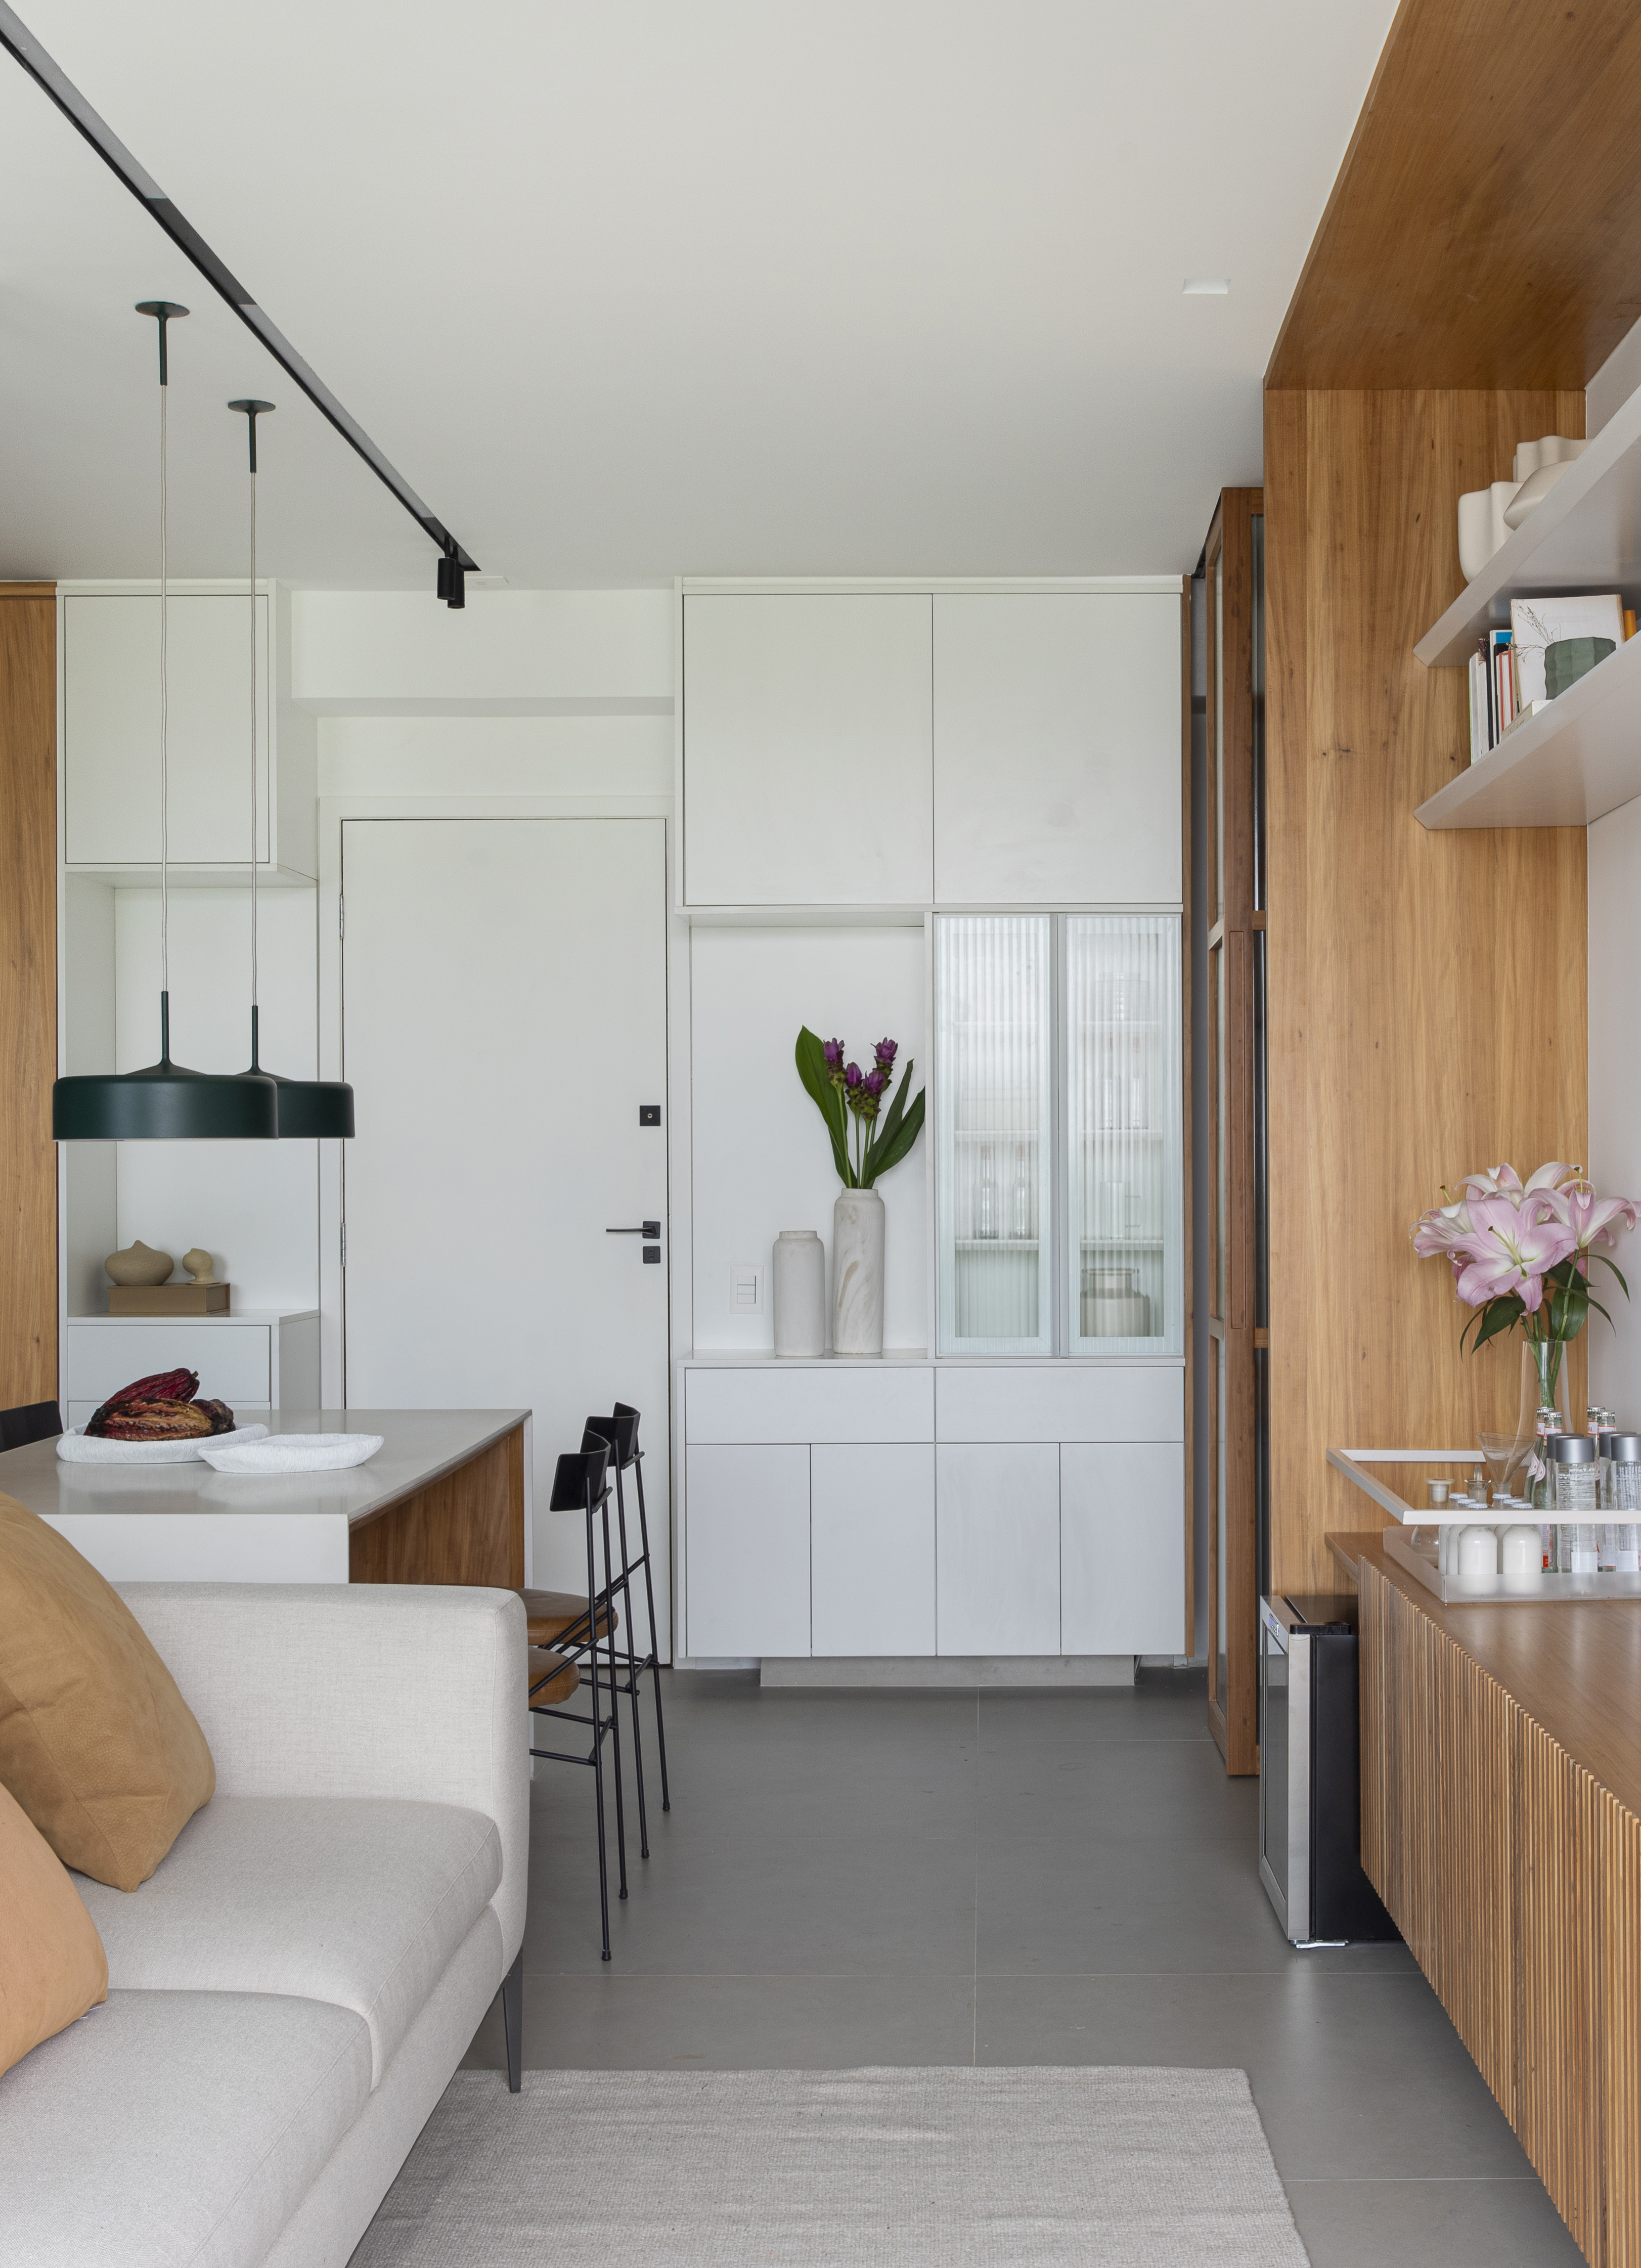 Branco e madeira criam décor cozy em apartamento de 70 m². Projeto de Rafael Ramos. Na foto, sala de tv com aparador ripado e prateleiras. Cozinha integrada.